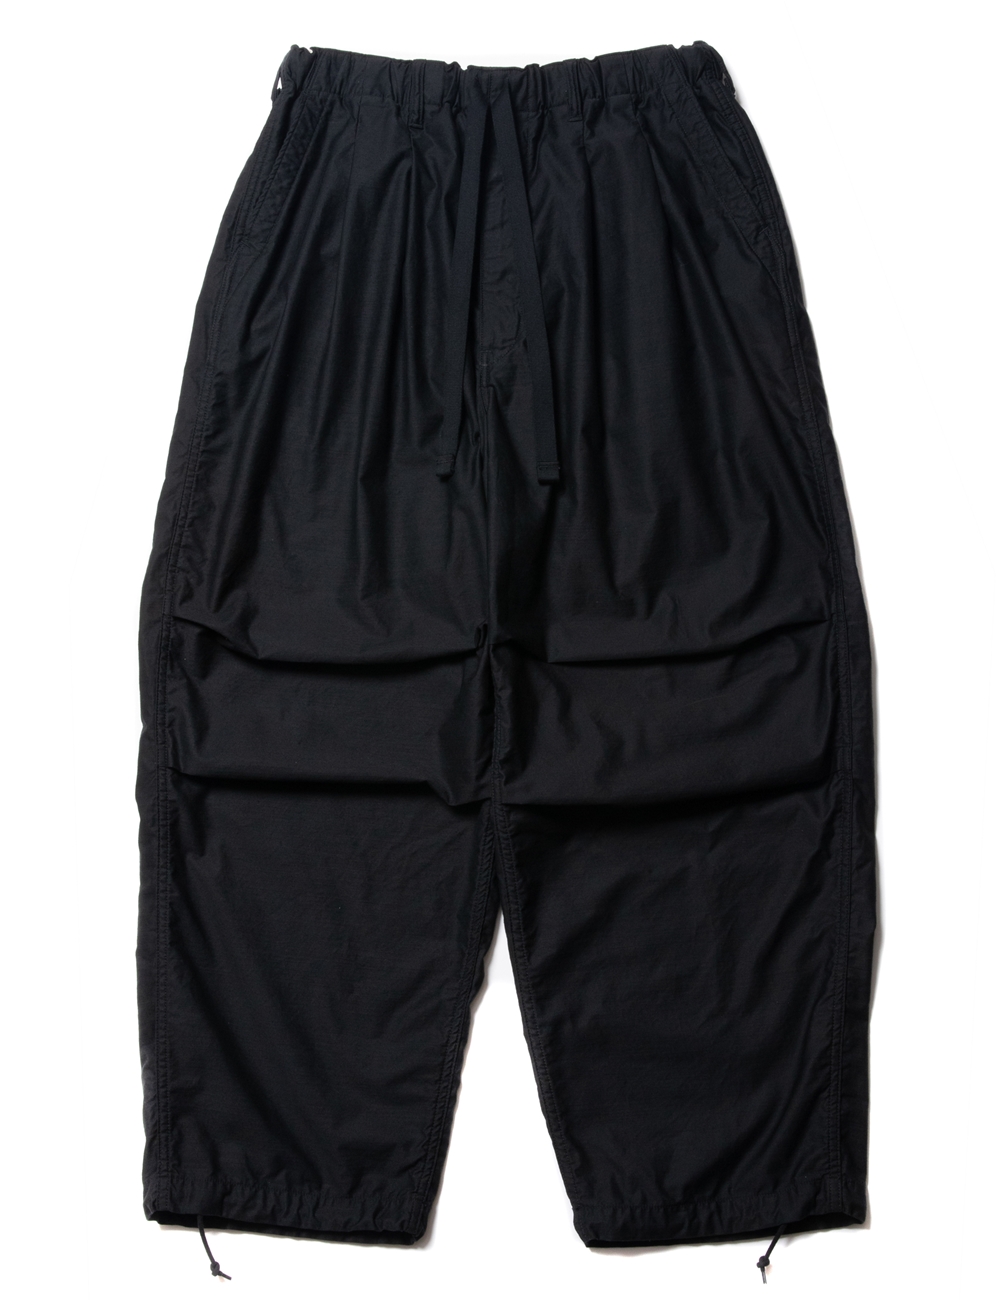 売切り特価 COOTIE Back Satin Shorts 68-AM1006-04 | getfitwith180.com